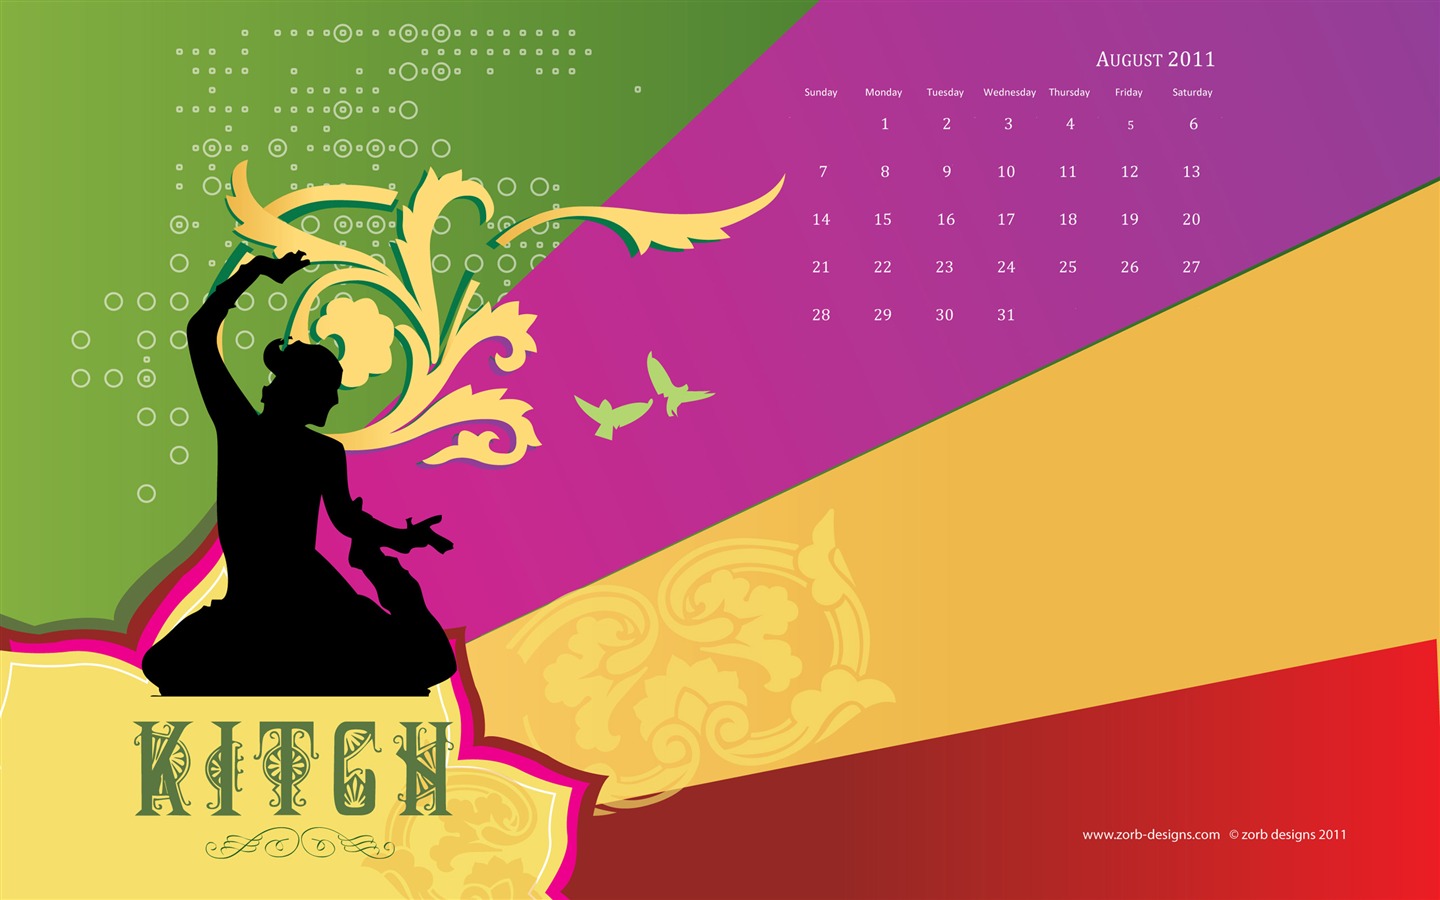 August 2011 calendar wallpaper (2) #18 - 1440x900